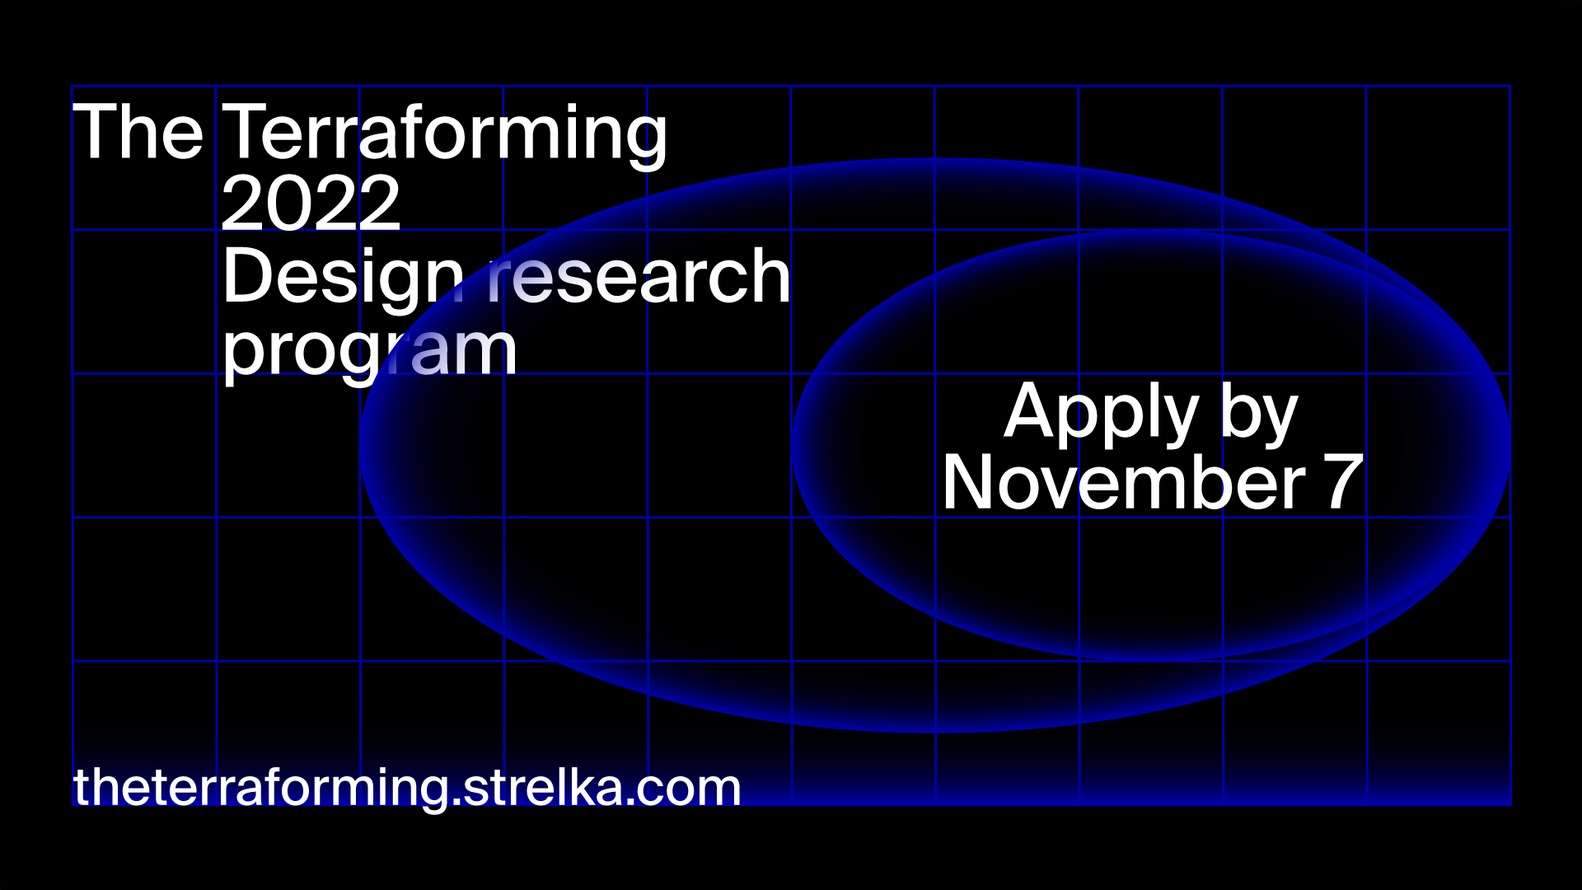 دعوة لتقديم الطلبات: التشكيل الأرضي 2022 | Call for Submissions: The Terraforming 2022